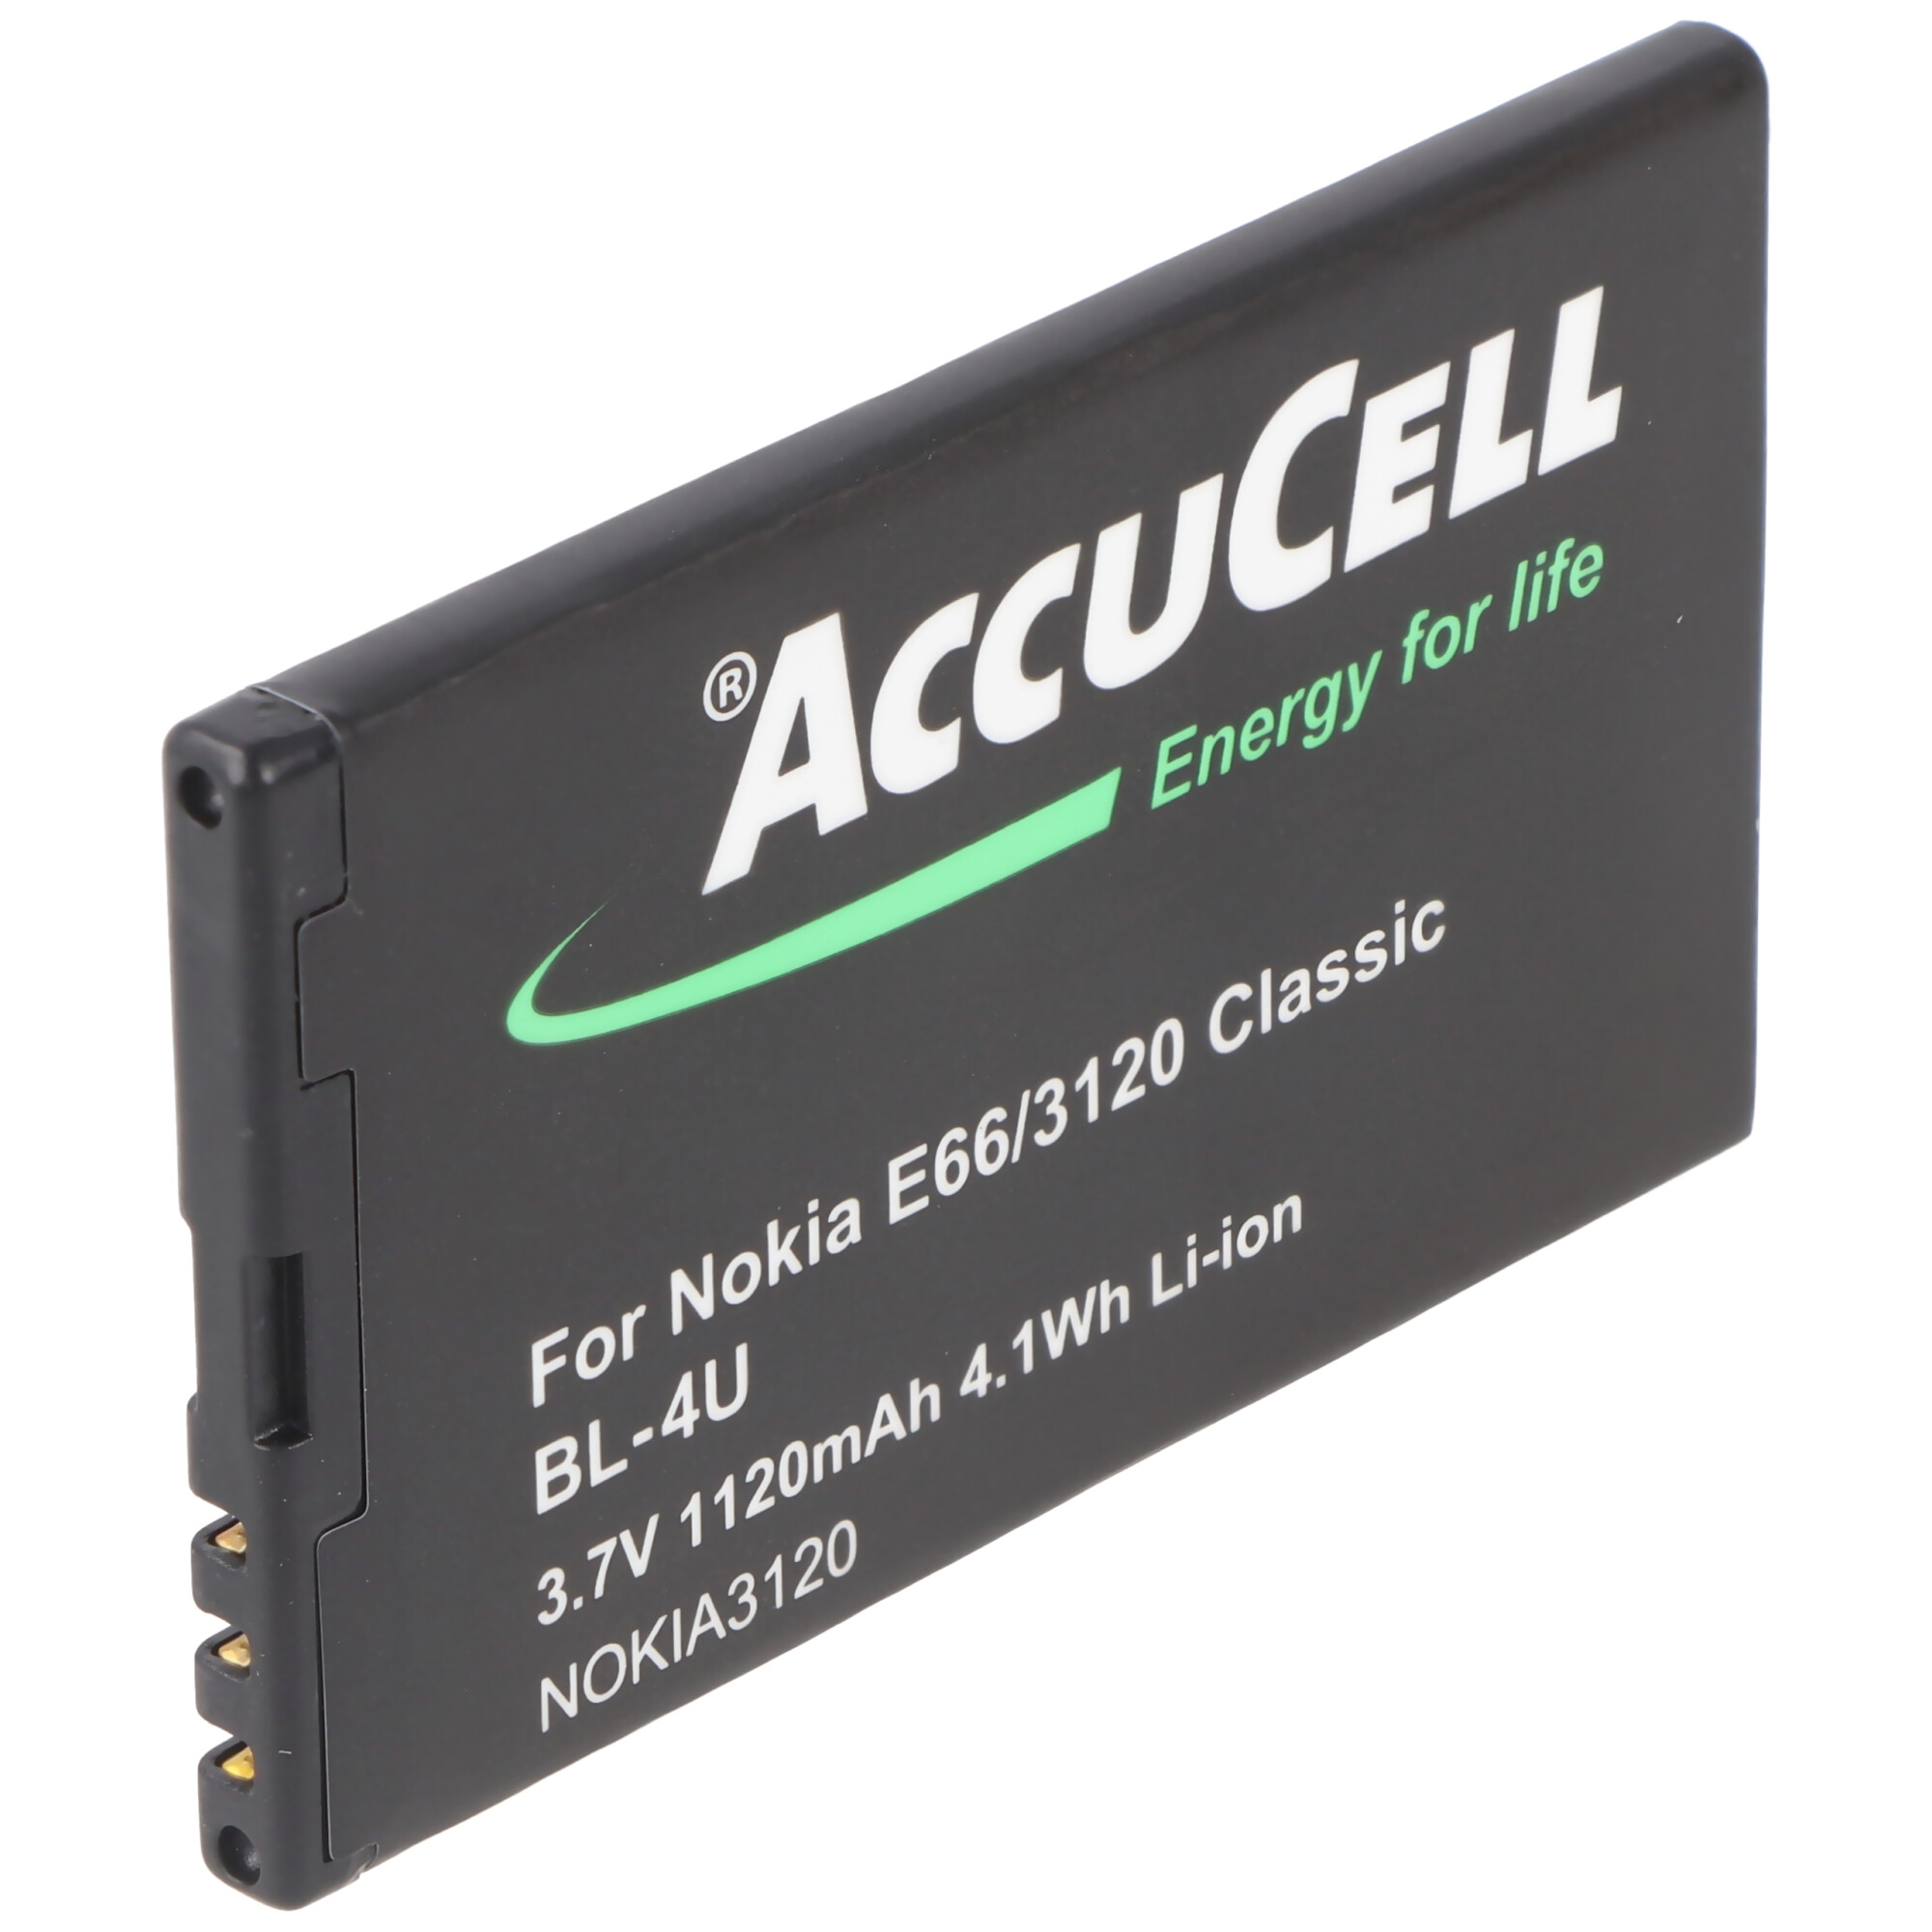 ACCUCELL Akku Li-Ion Handy-Akku, Lithium-Ionen mAh 6600 1120 - slide passend für Nokia